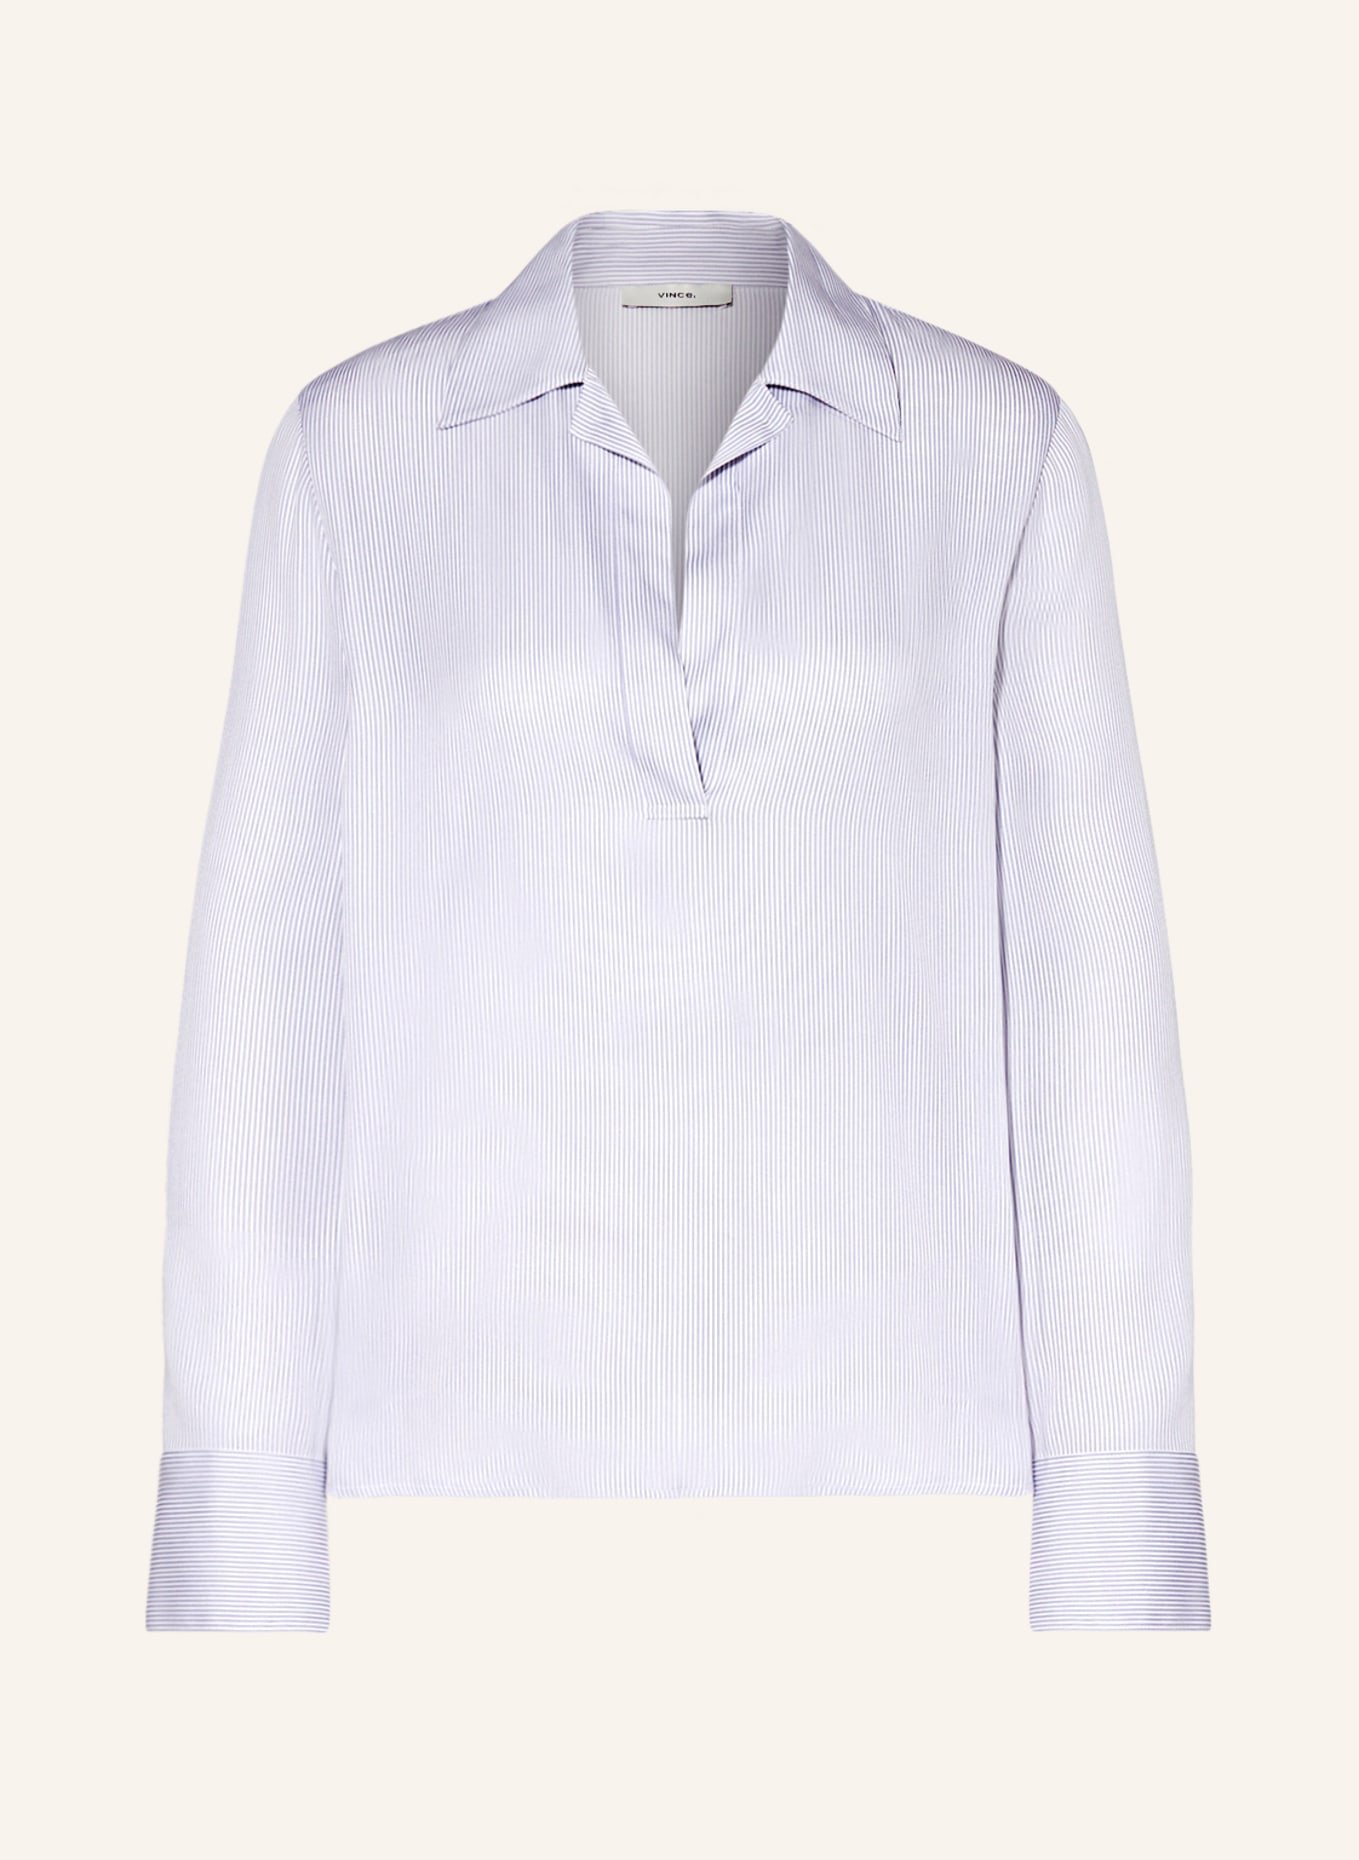 VINCE Shirt blouse, Color: LIGHT BLUE/ WHITE (Image 1)